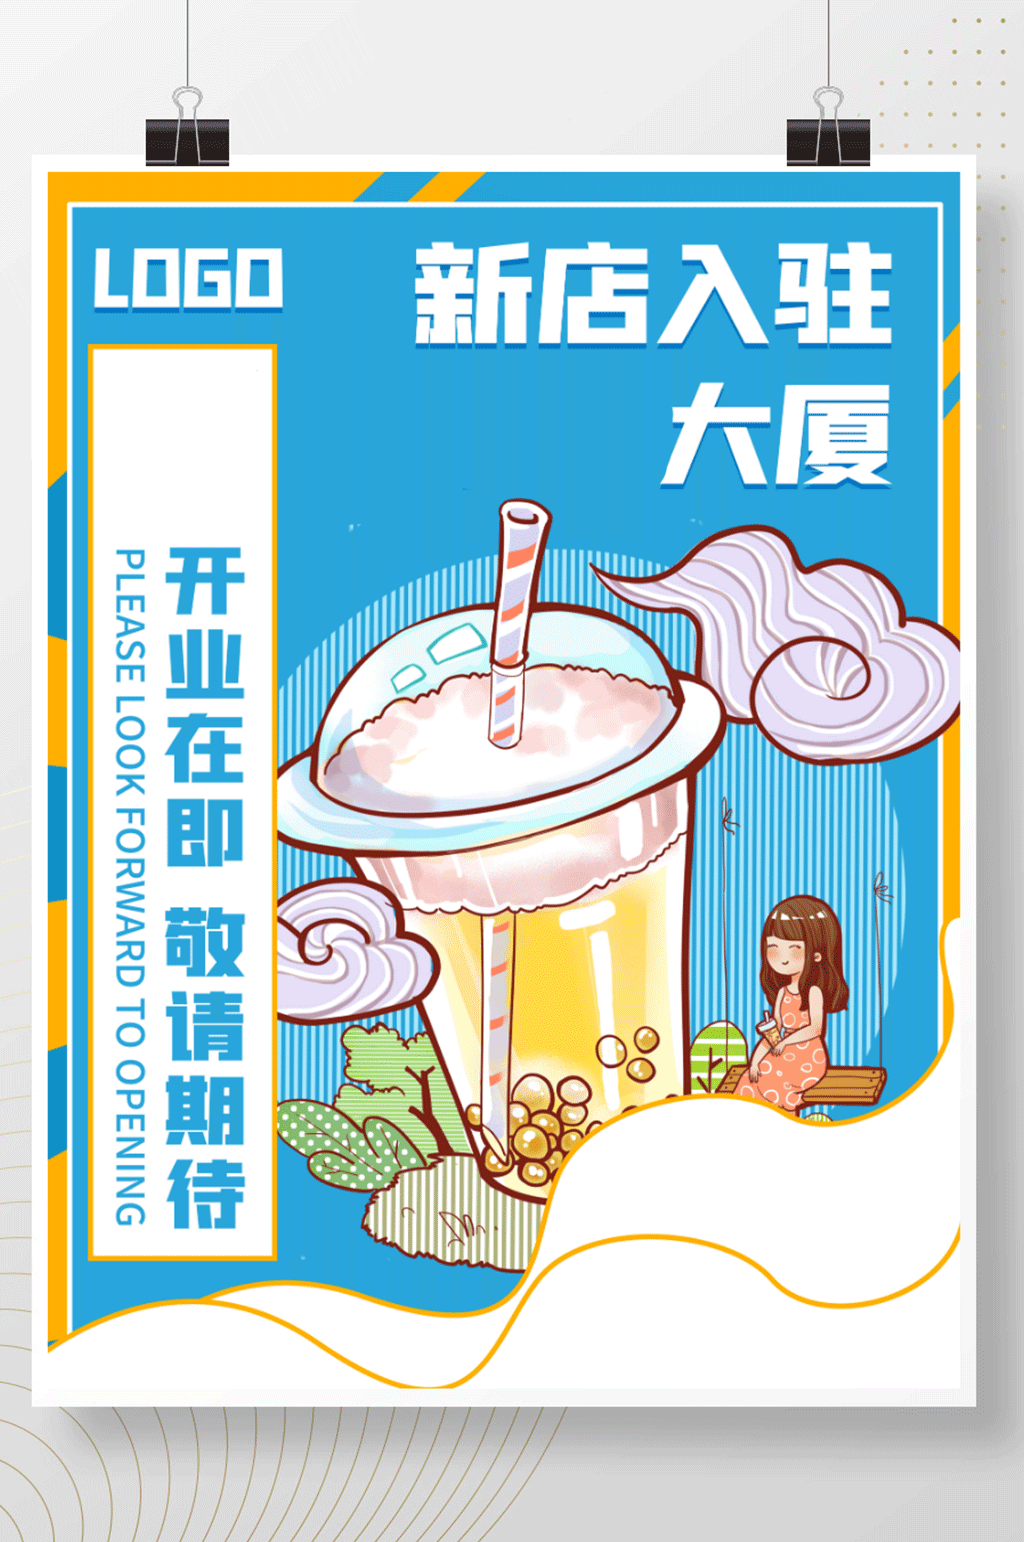 奶茶新店入驻商场店铺宣传海报素材